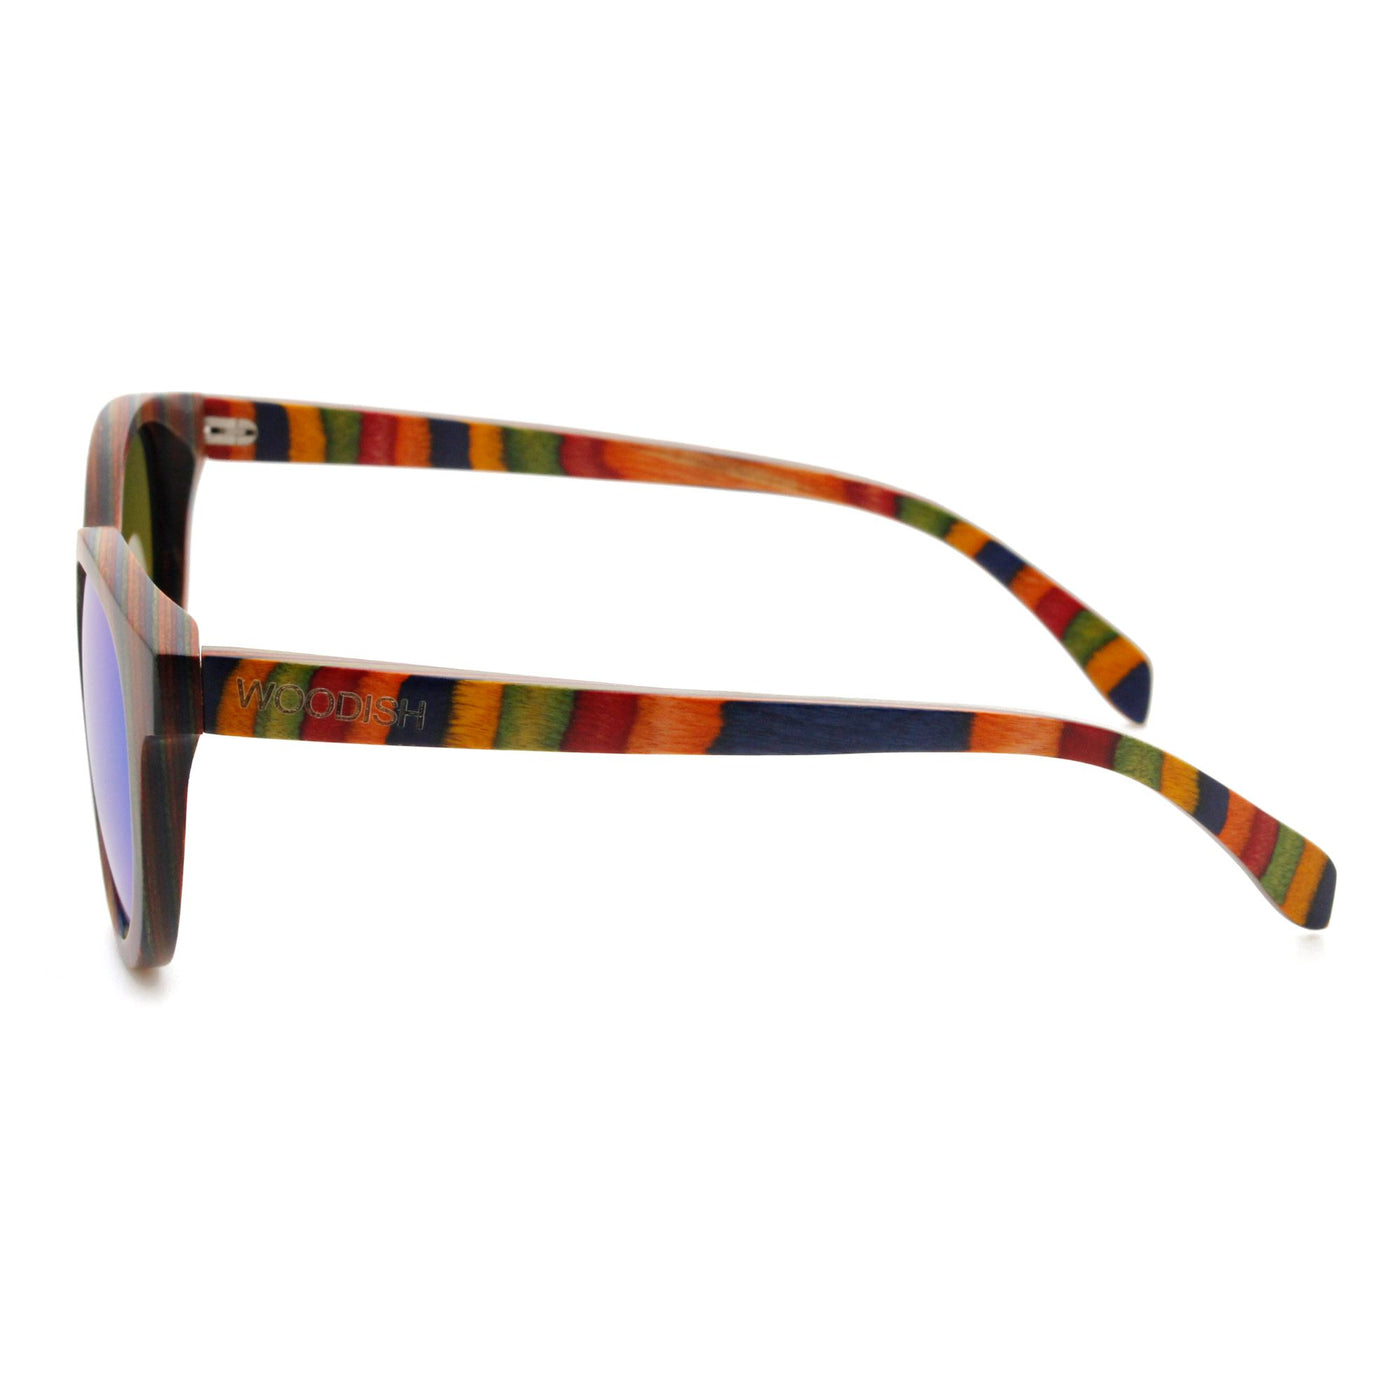 Round Skateboard Blue Lens Polarized Bamboo Sunglasses 4850-1 Unisex Sunglasses Retsing Eyewear 